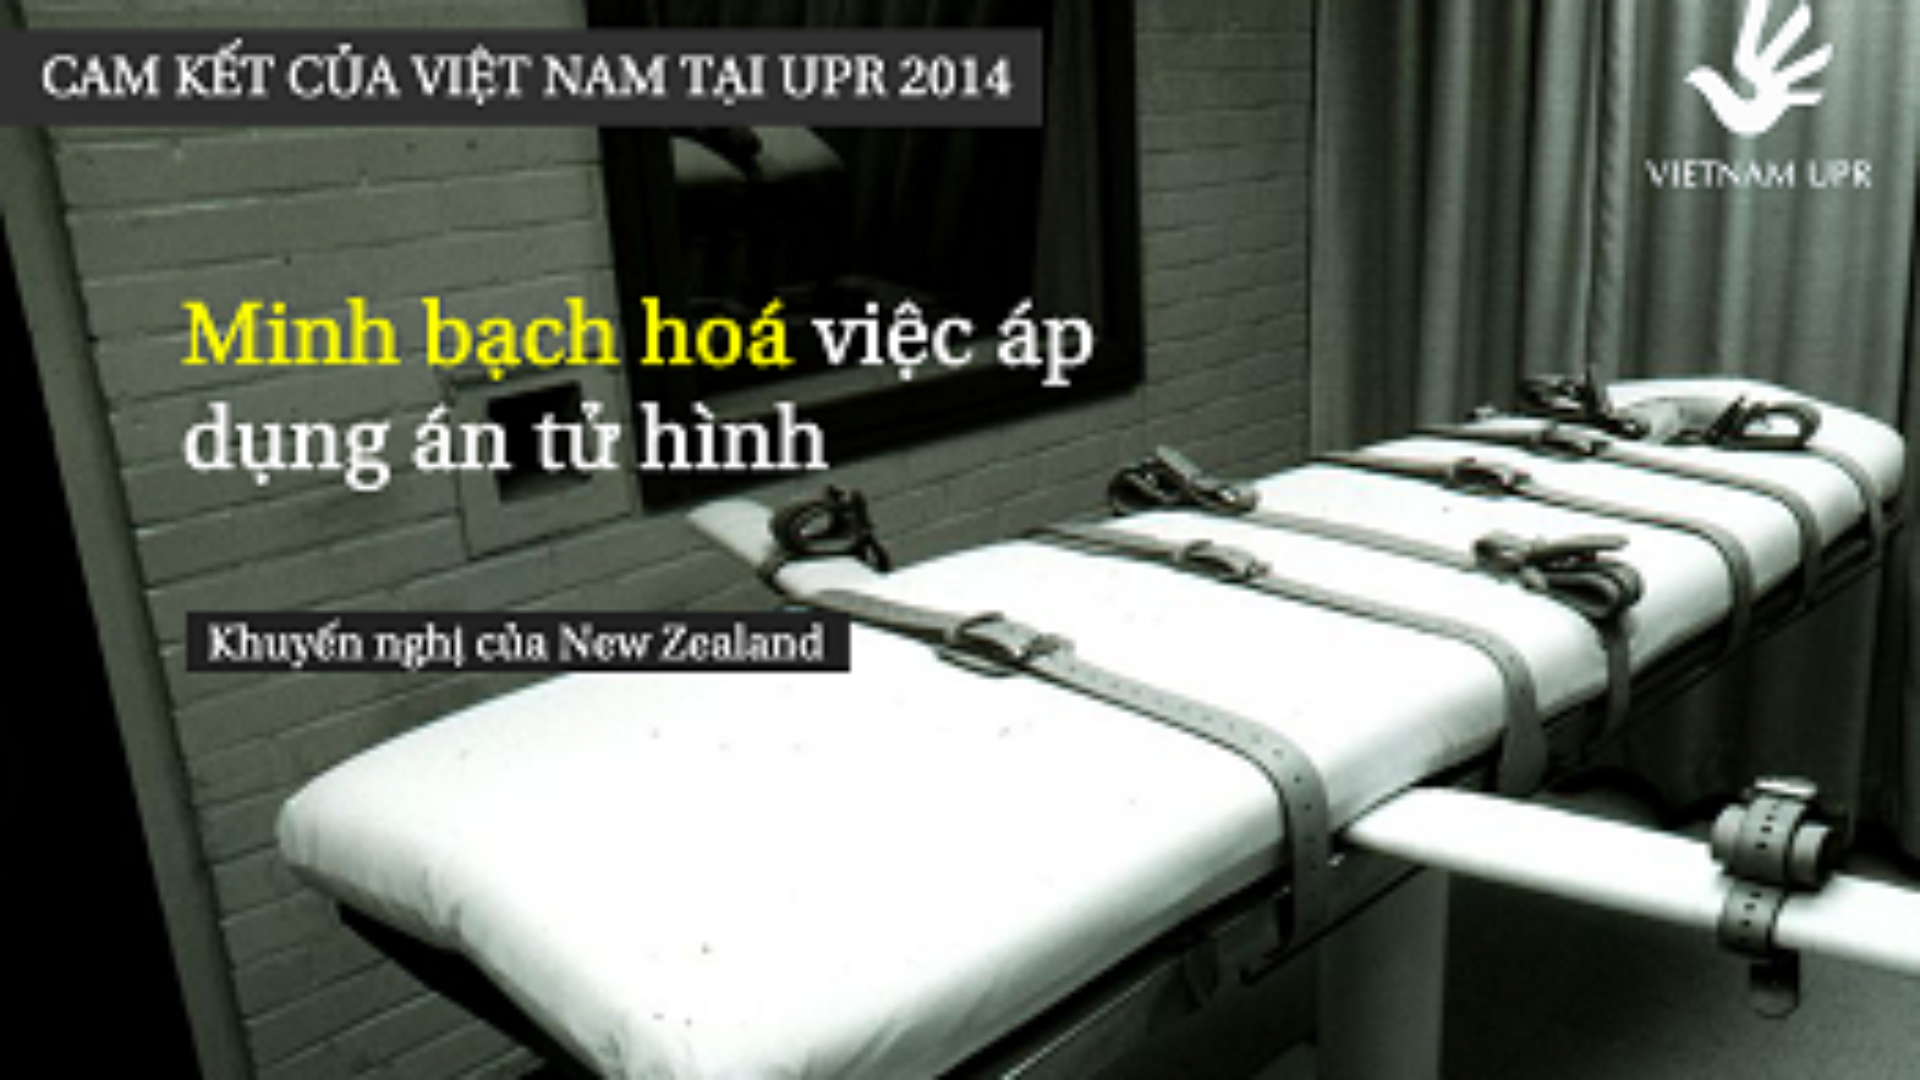 Bạn có biết: Minh bạch hóa việc sử dụng án Tử hình – Những cam kết của Việt Nam về án tử hình tại UPR 2014